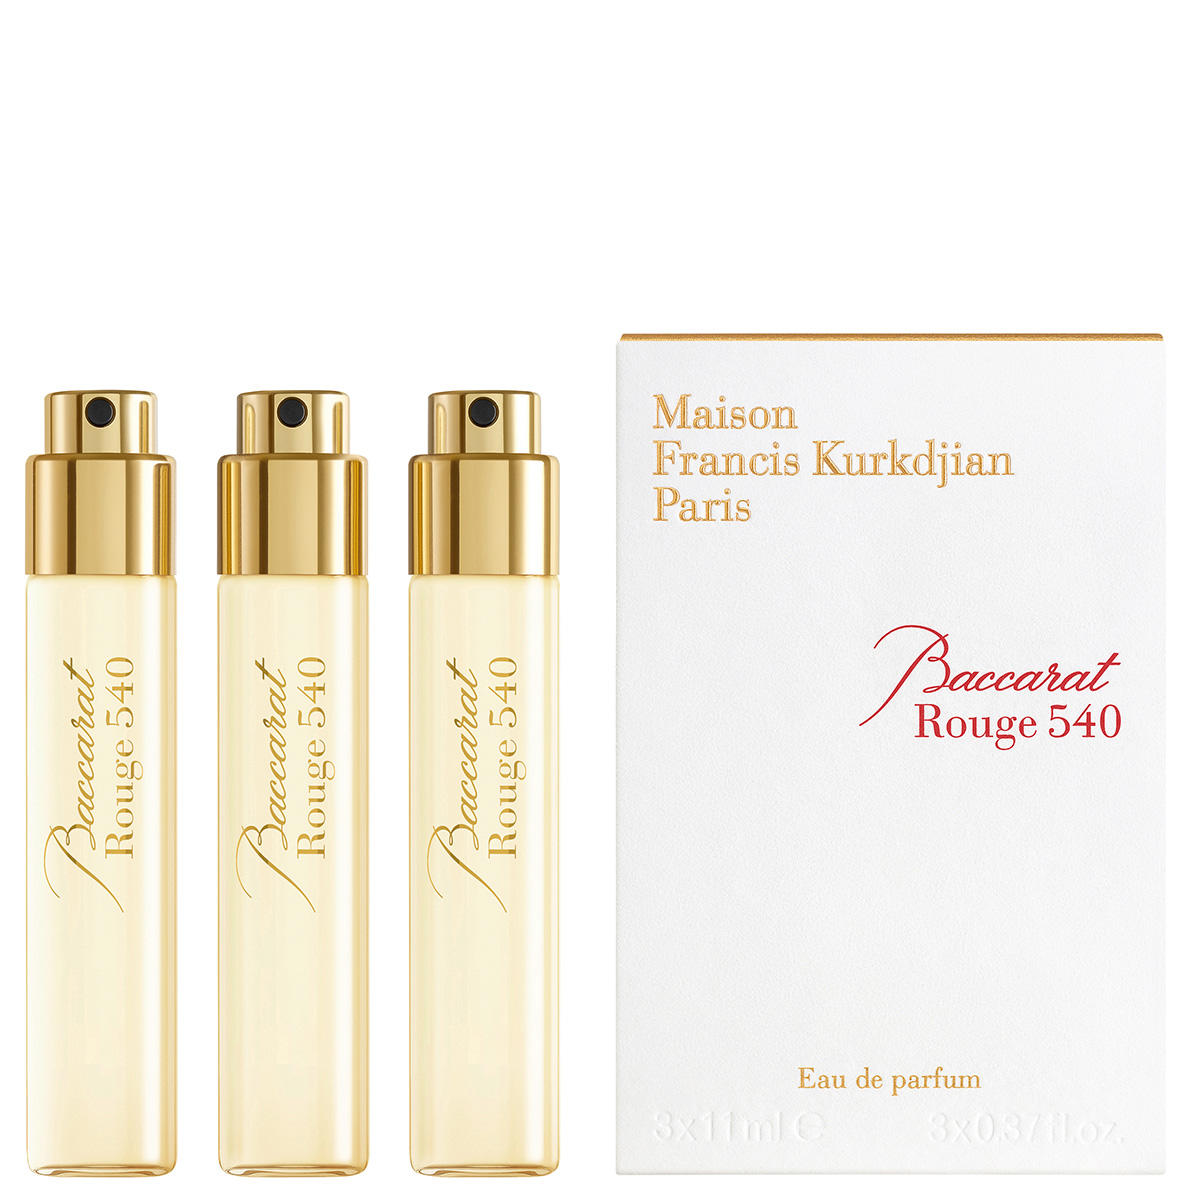 Maison Francis Kurkdjian Paris Baccarat Rouge 540 Eau de Parfum Refill Envase con 3 x 11 ml - 2